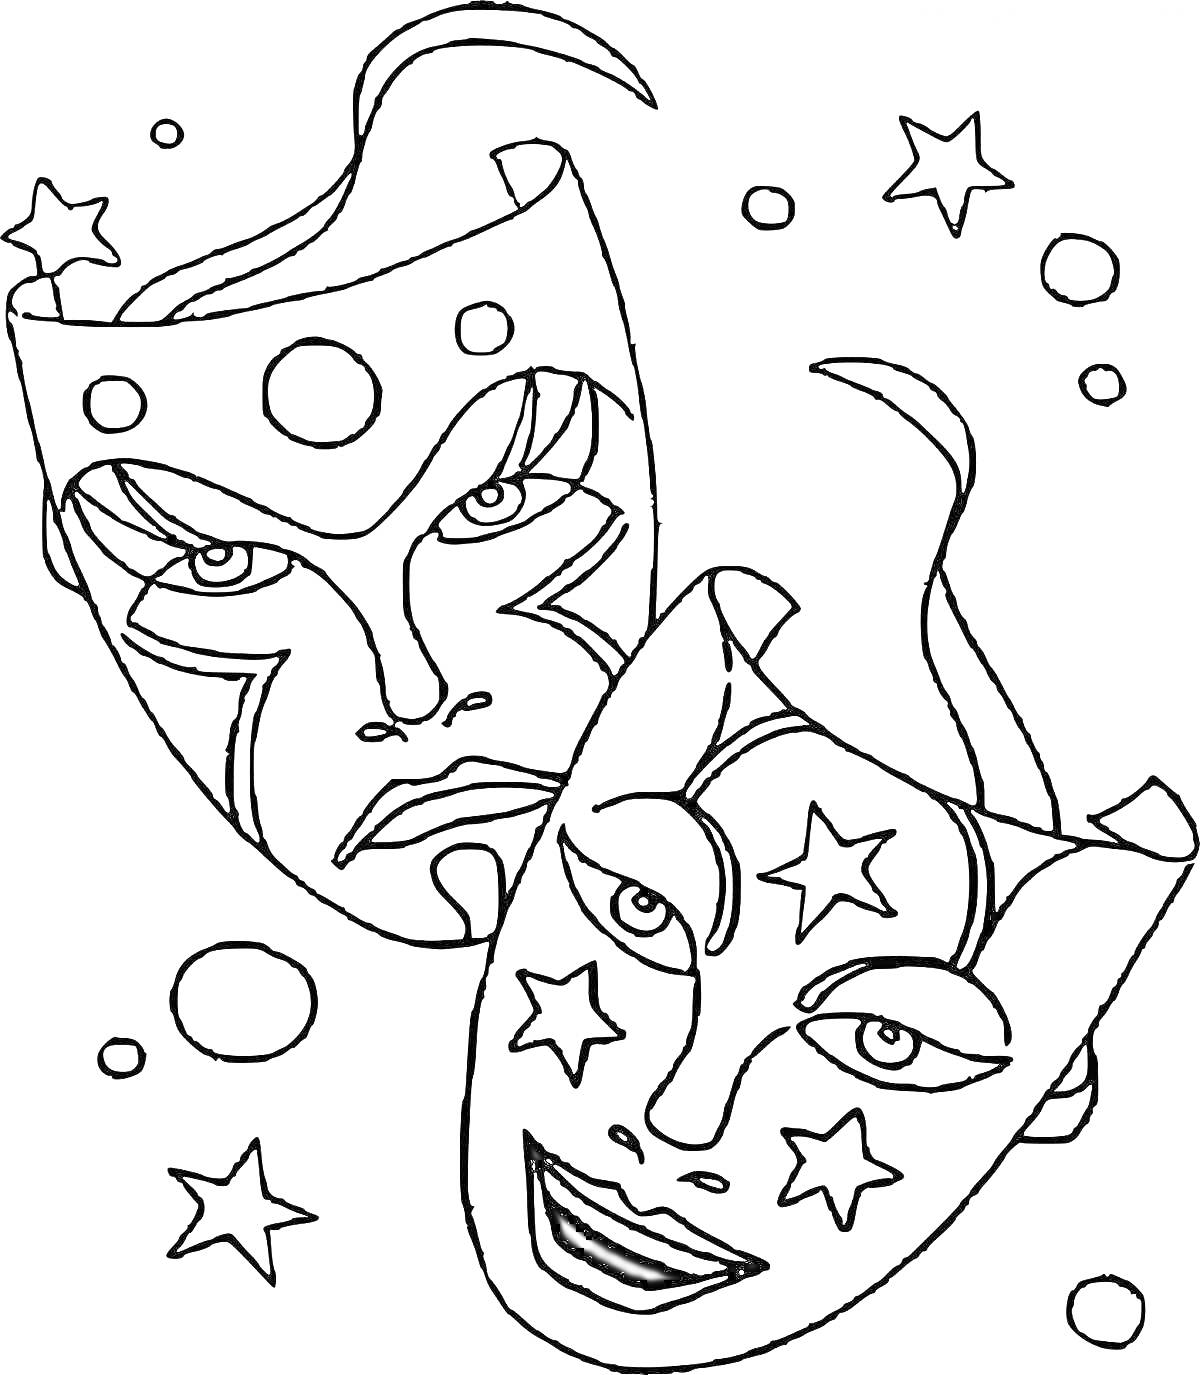 театральные маски с звездочками и кругами